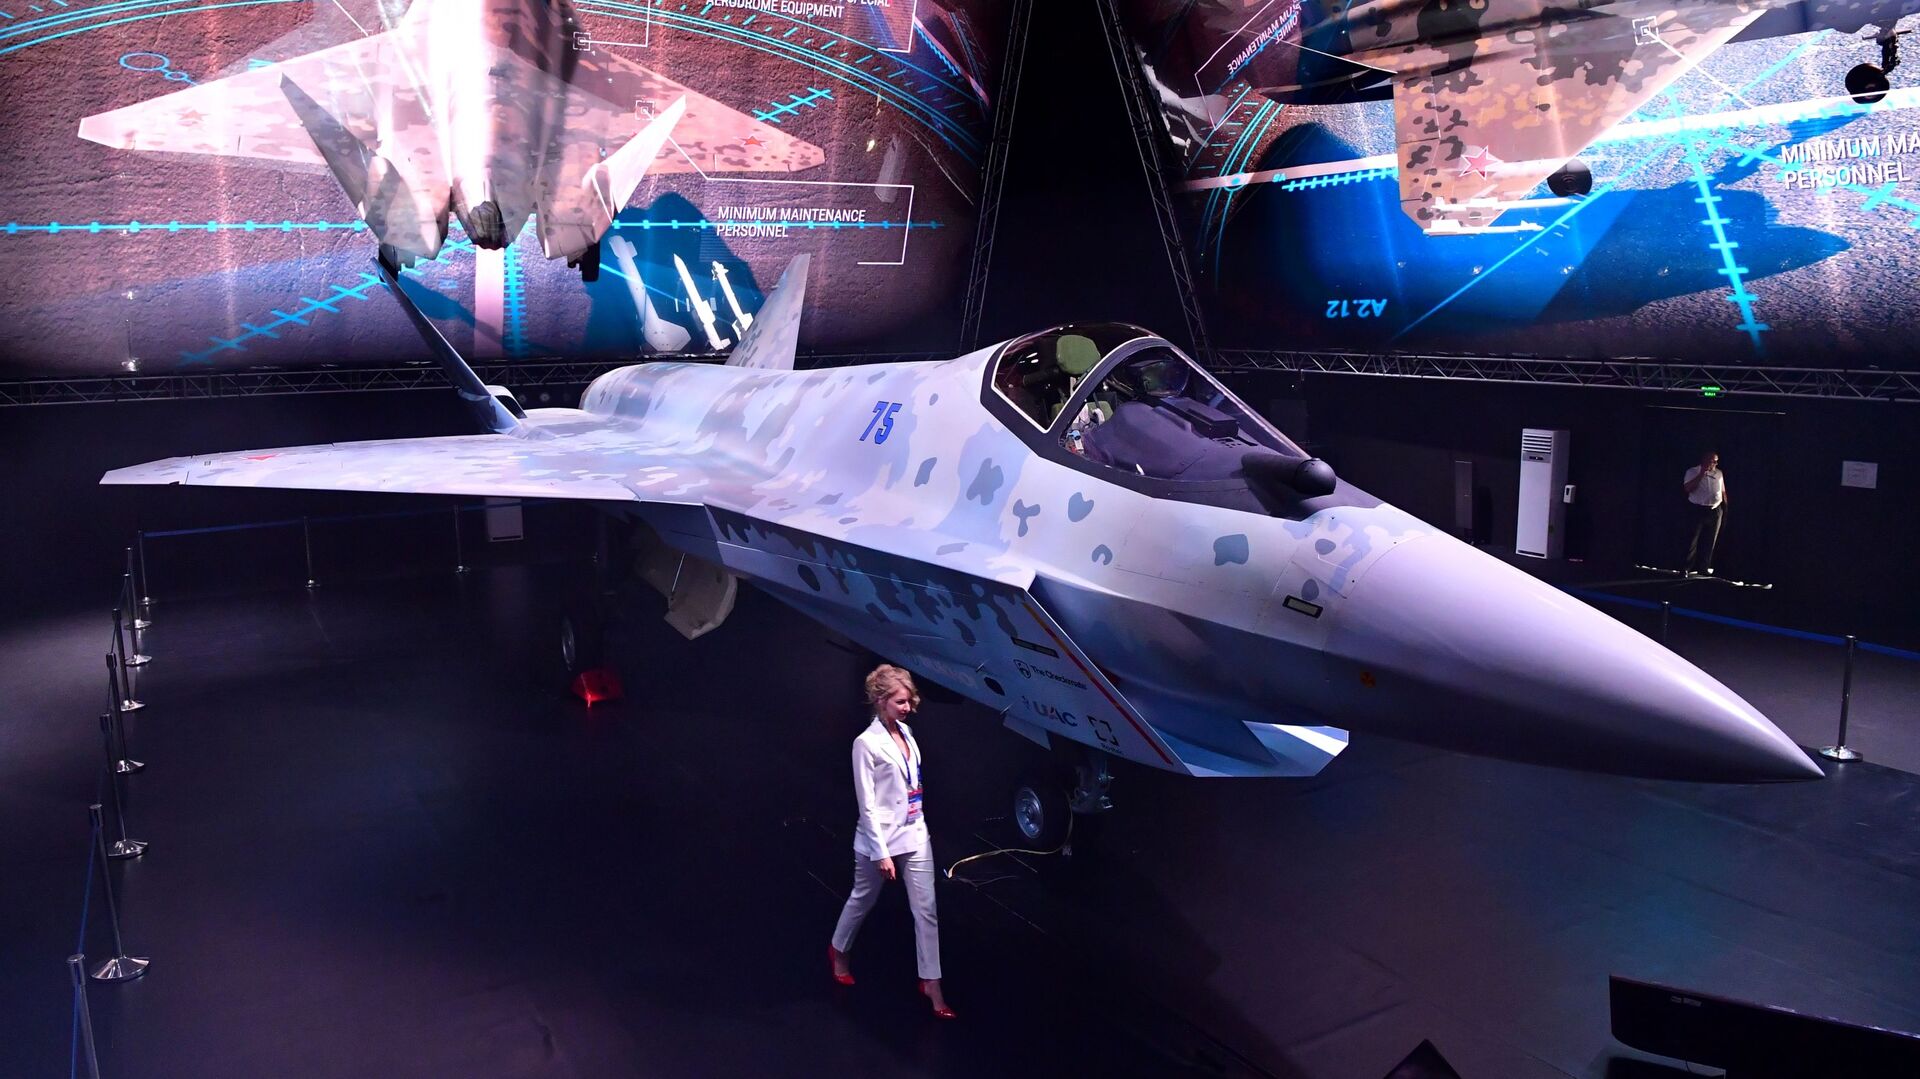 مقاتلة سوخوي تشيك ميت (كش ملك) في معرض الطيران والفضاء الدولي ماكس 2021 في جوكوفسكي، ضواحي موسكو، روسيا 20 يوليو 2021 - سبوتنيك عربي, 1920, 19.11.2021